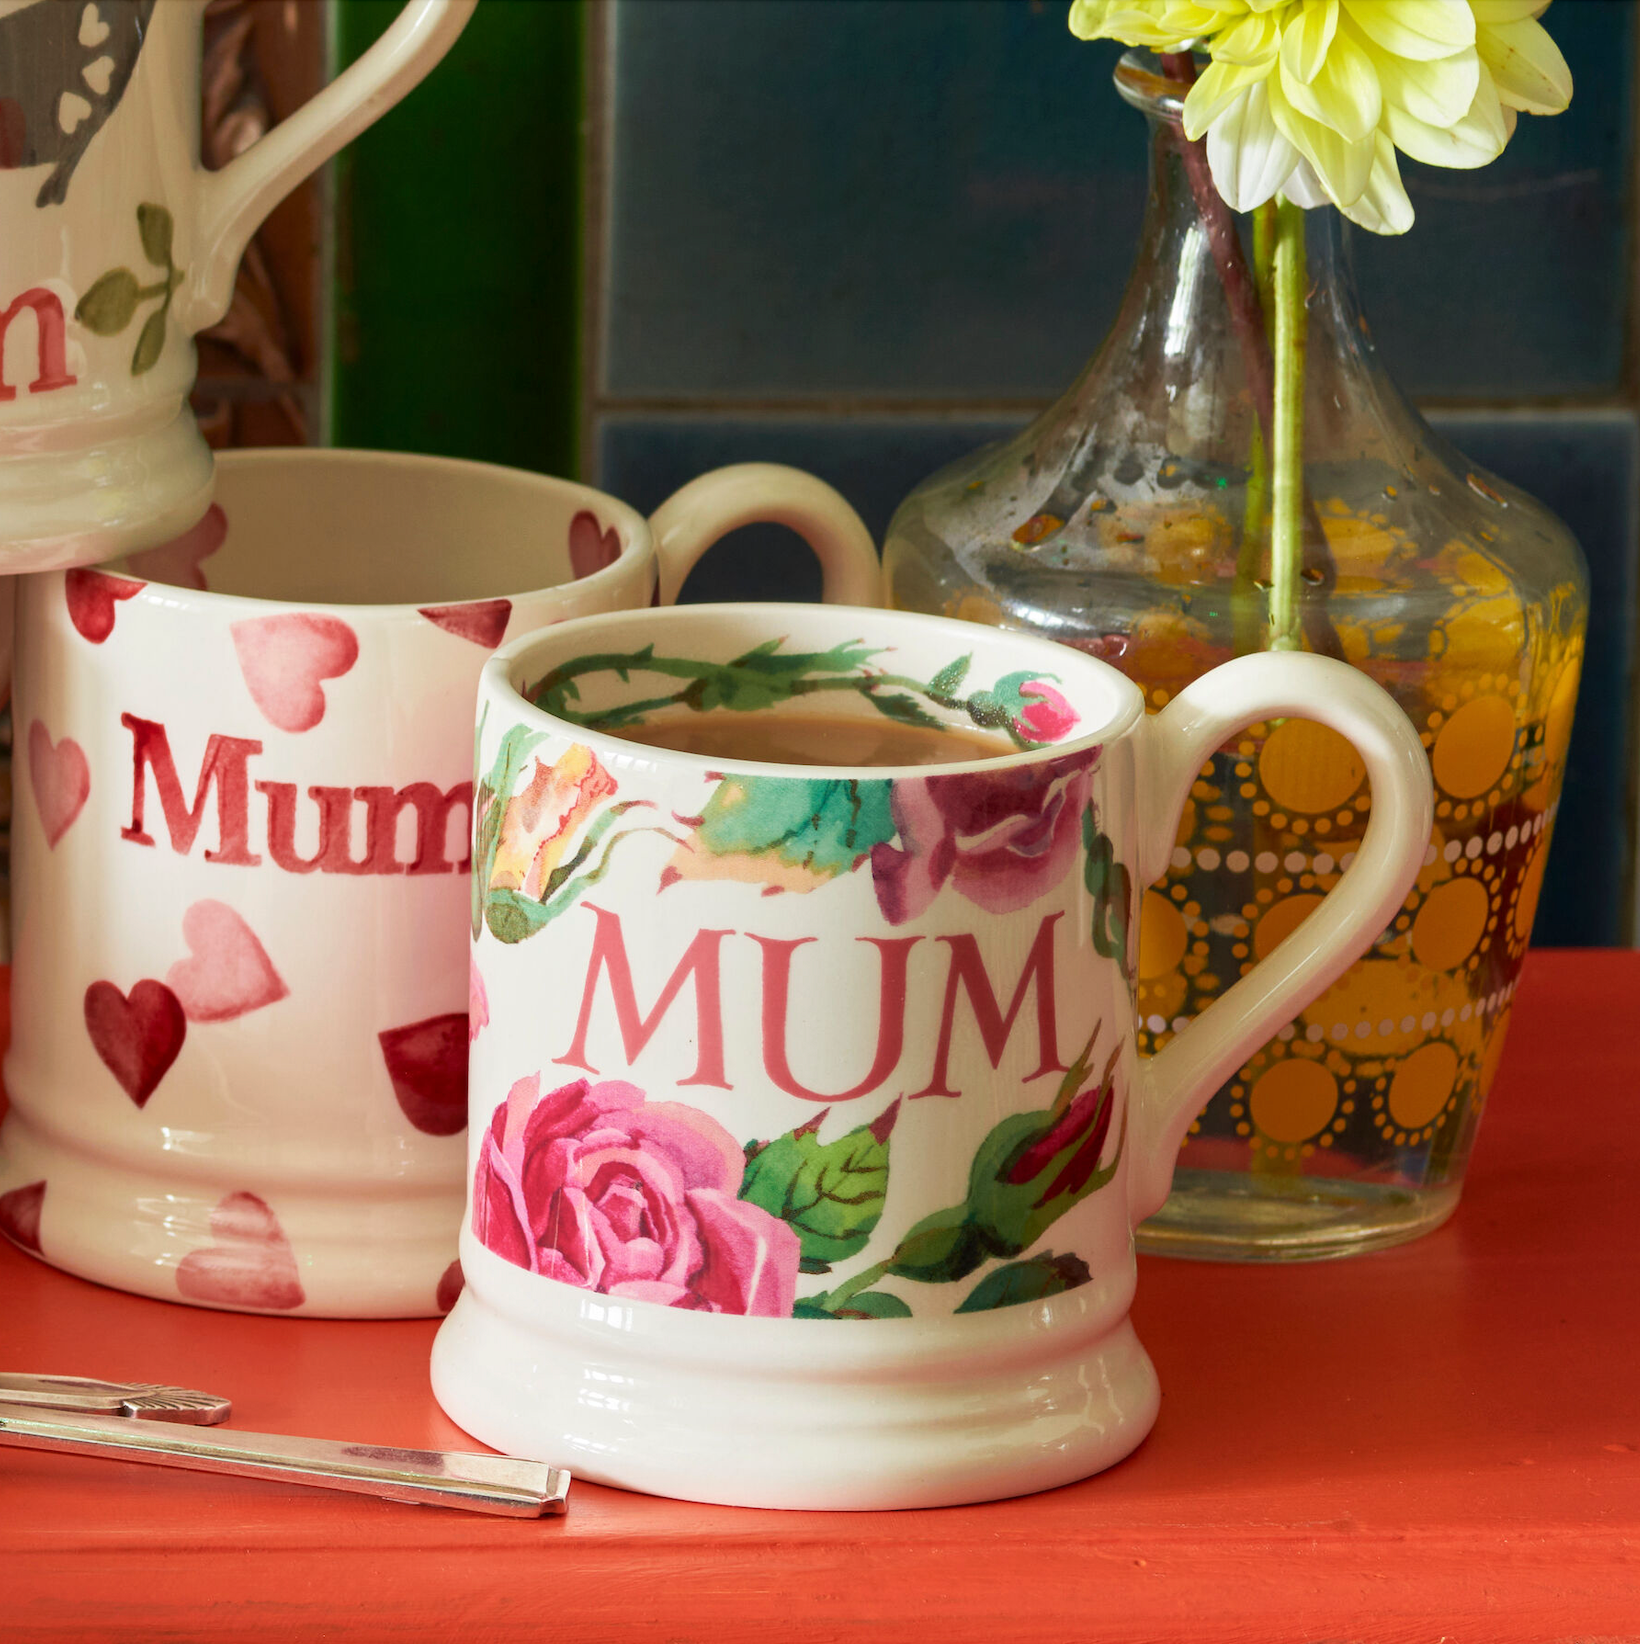 Roses Mum 1/2 Pint Mug